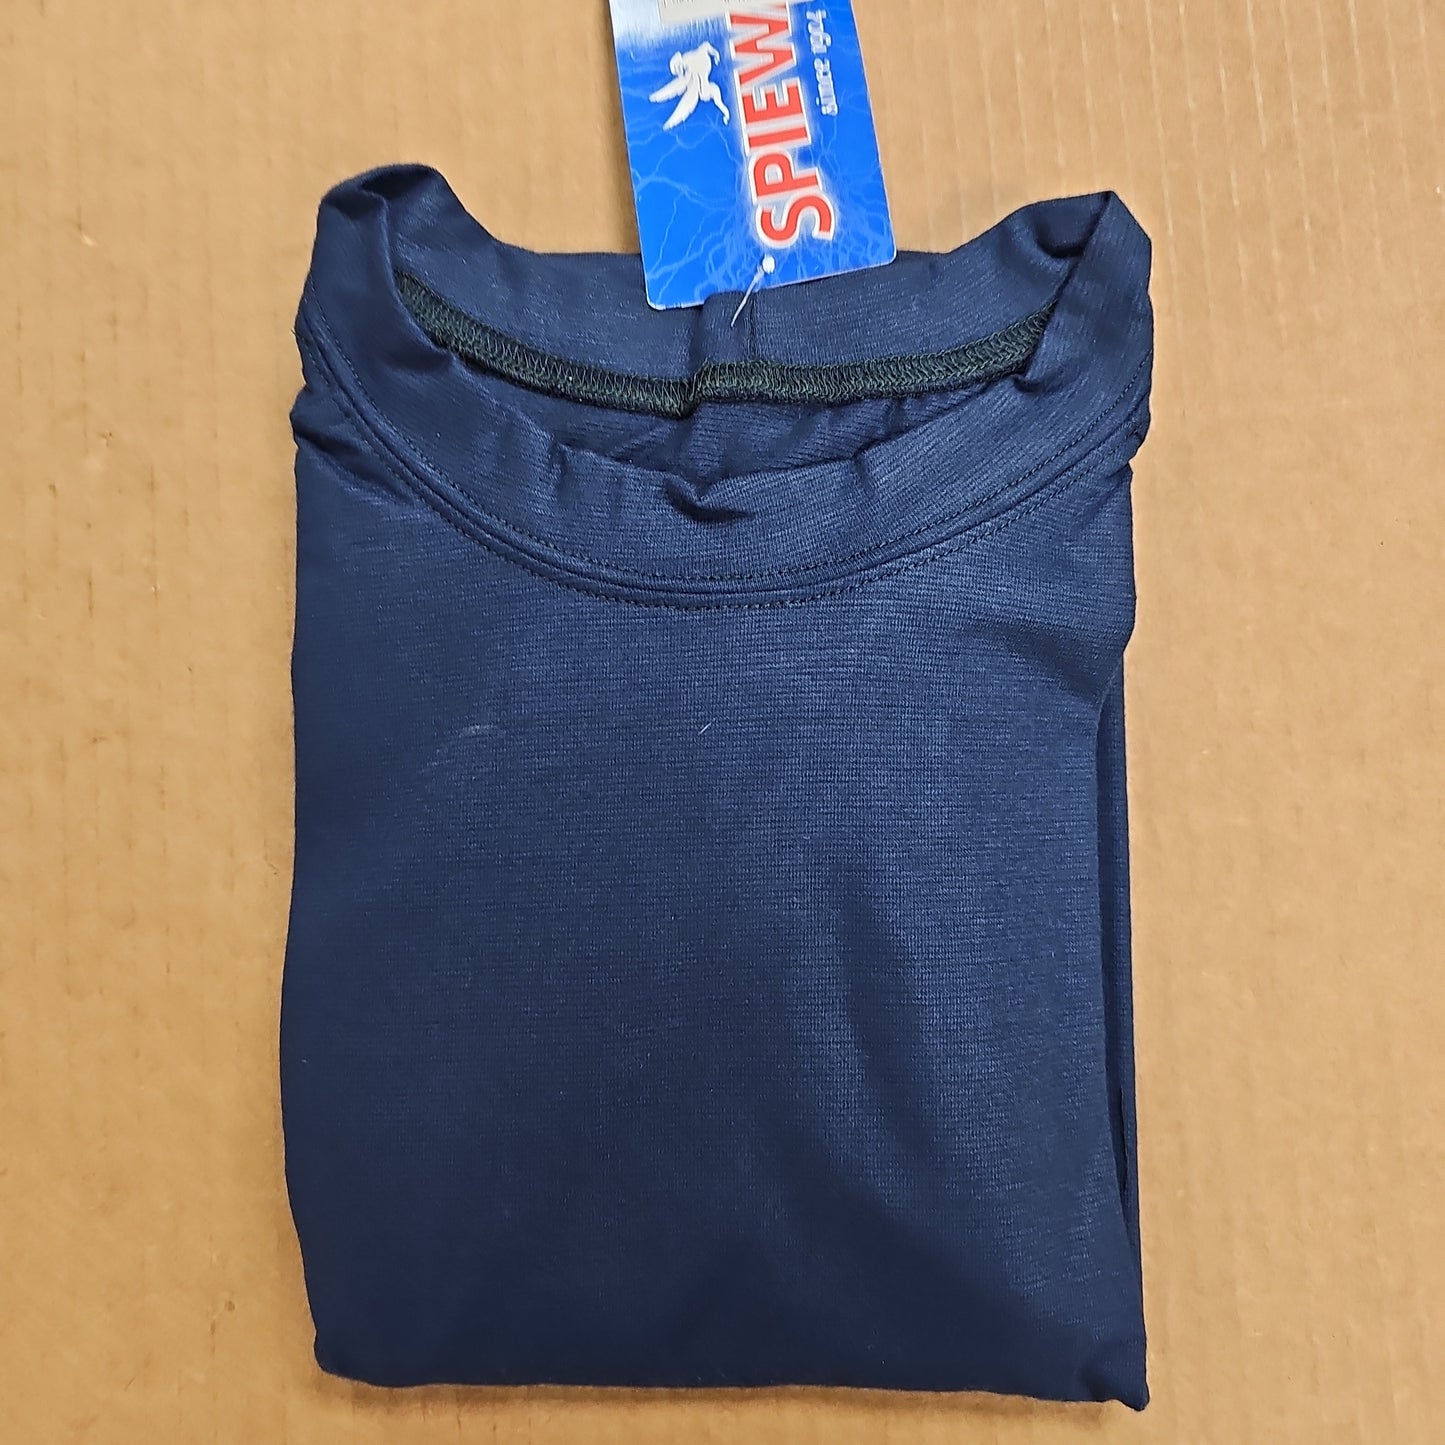 T-Shirt: S/S, Guardian FX Base Layer, Dark Navy, XL BL110-001-XL